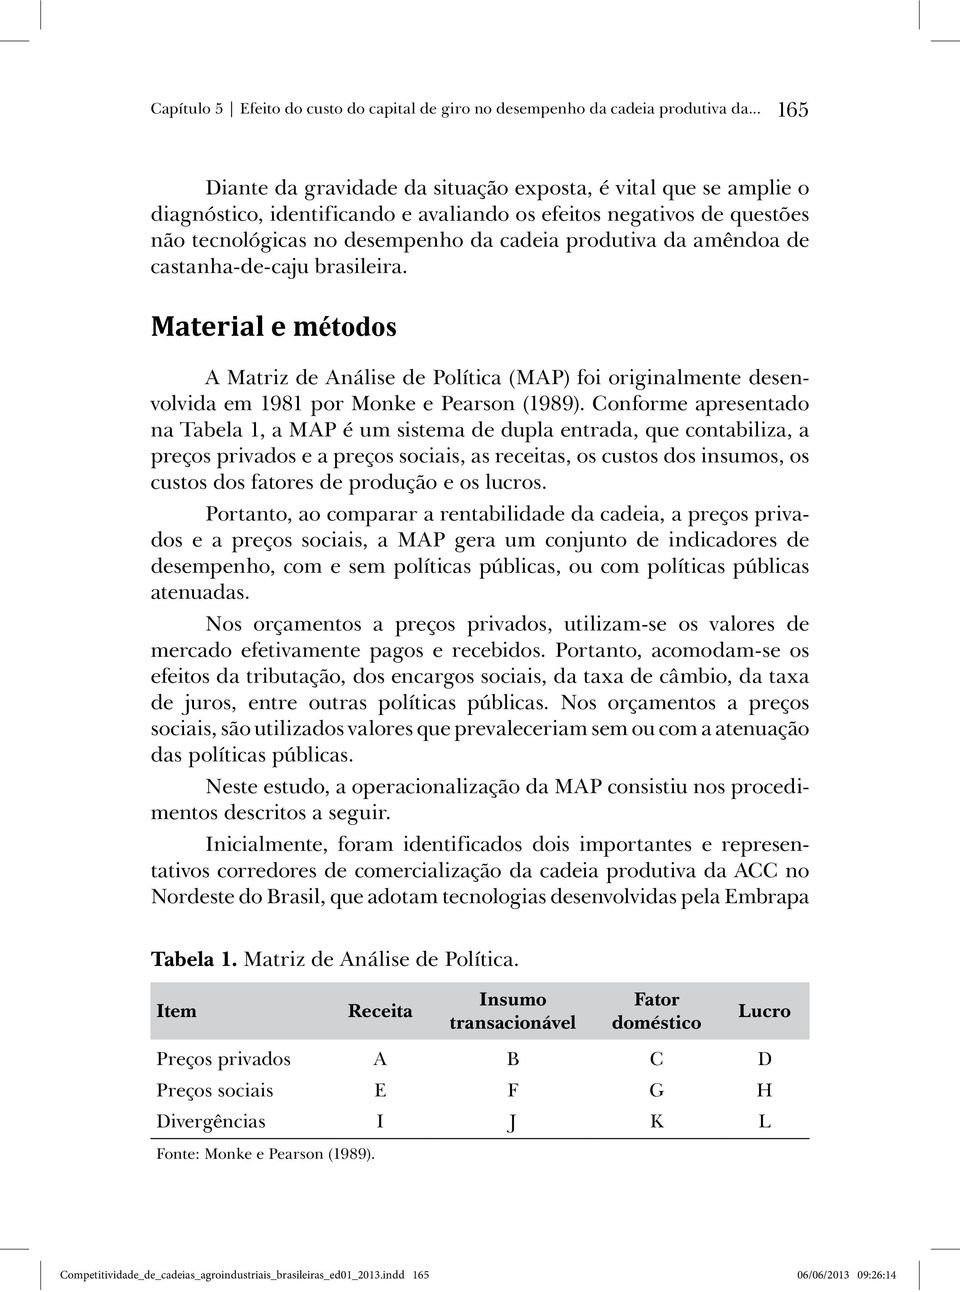 amêndoa de castanha-de-caju brasileira. Material e métodos A Matriz de Análise de Política (MAP) foi originalmente desenvolvida em 1981 por Monke e Pearson (1989).